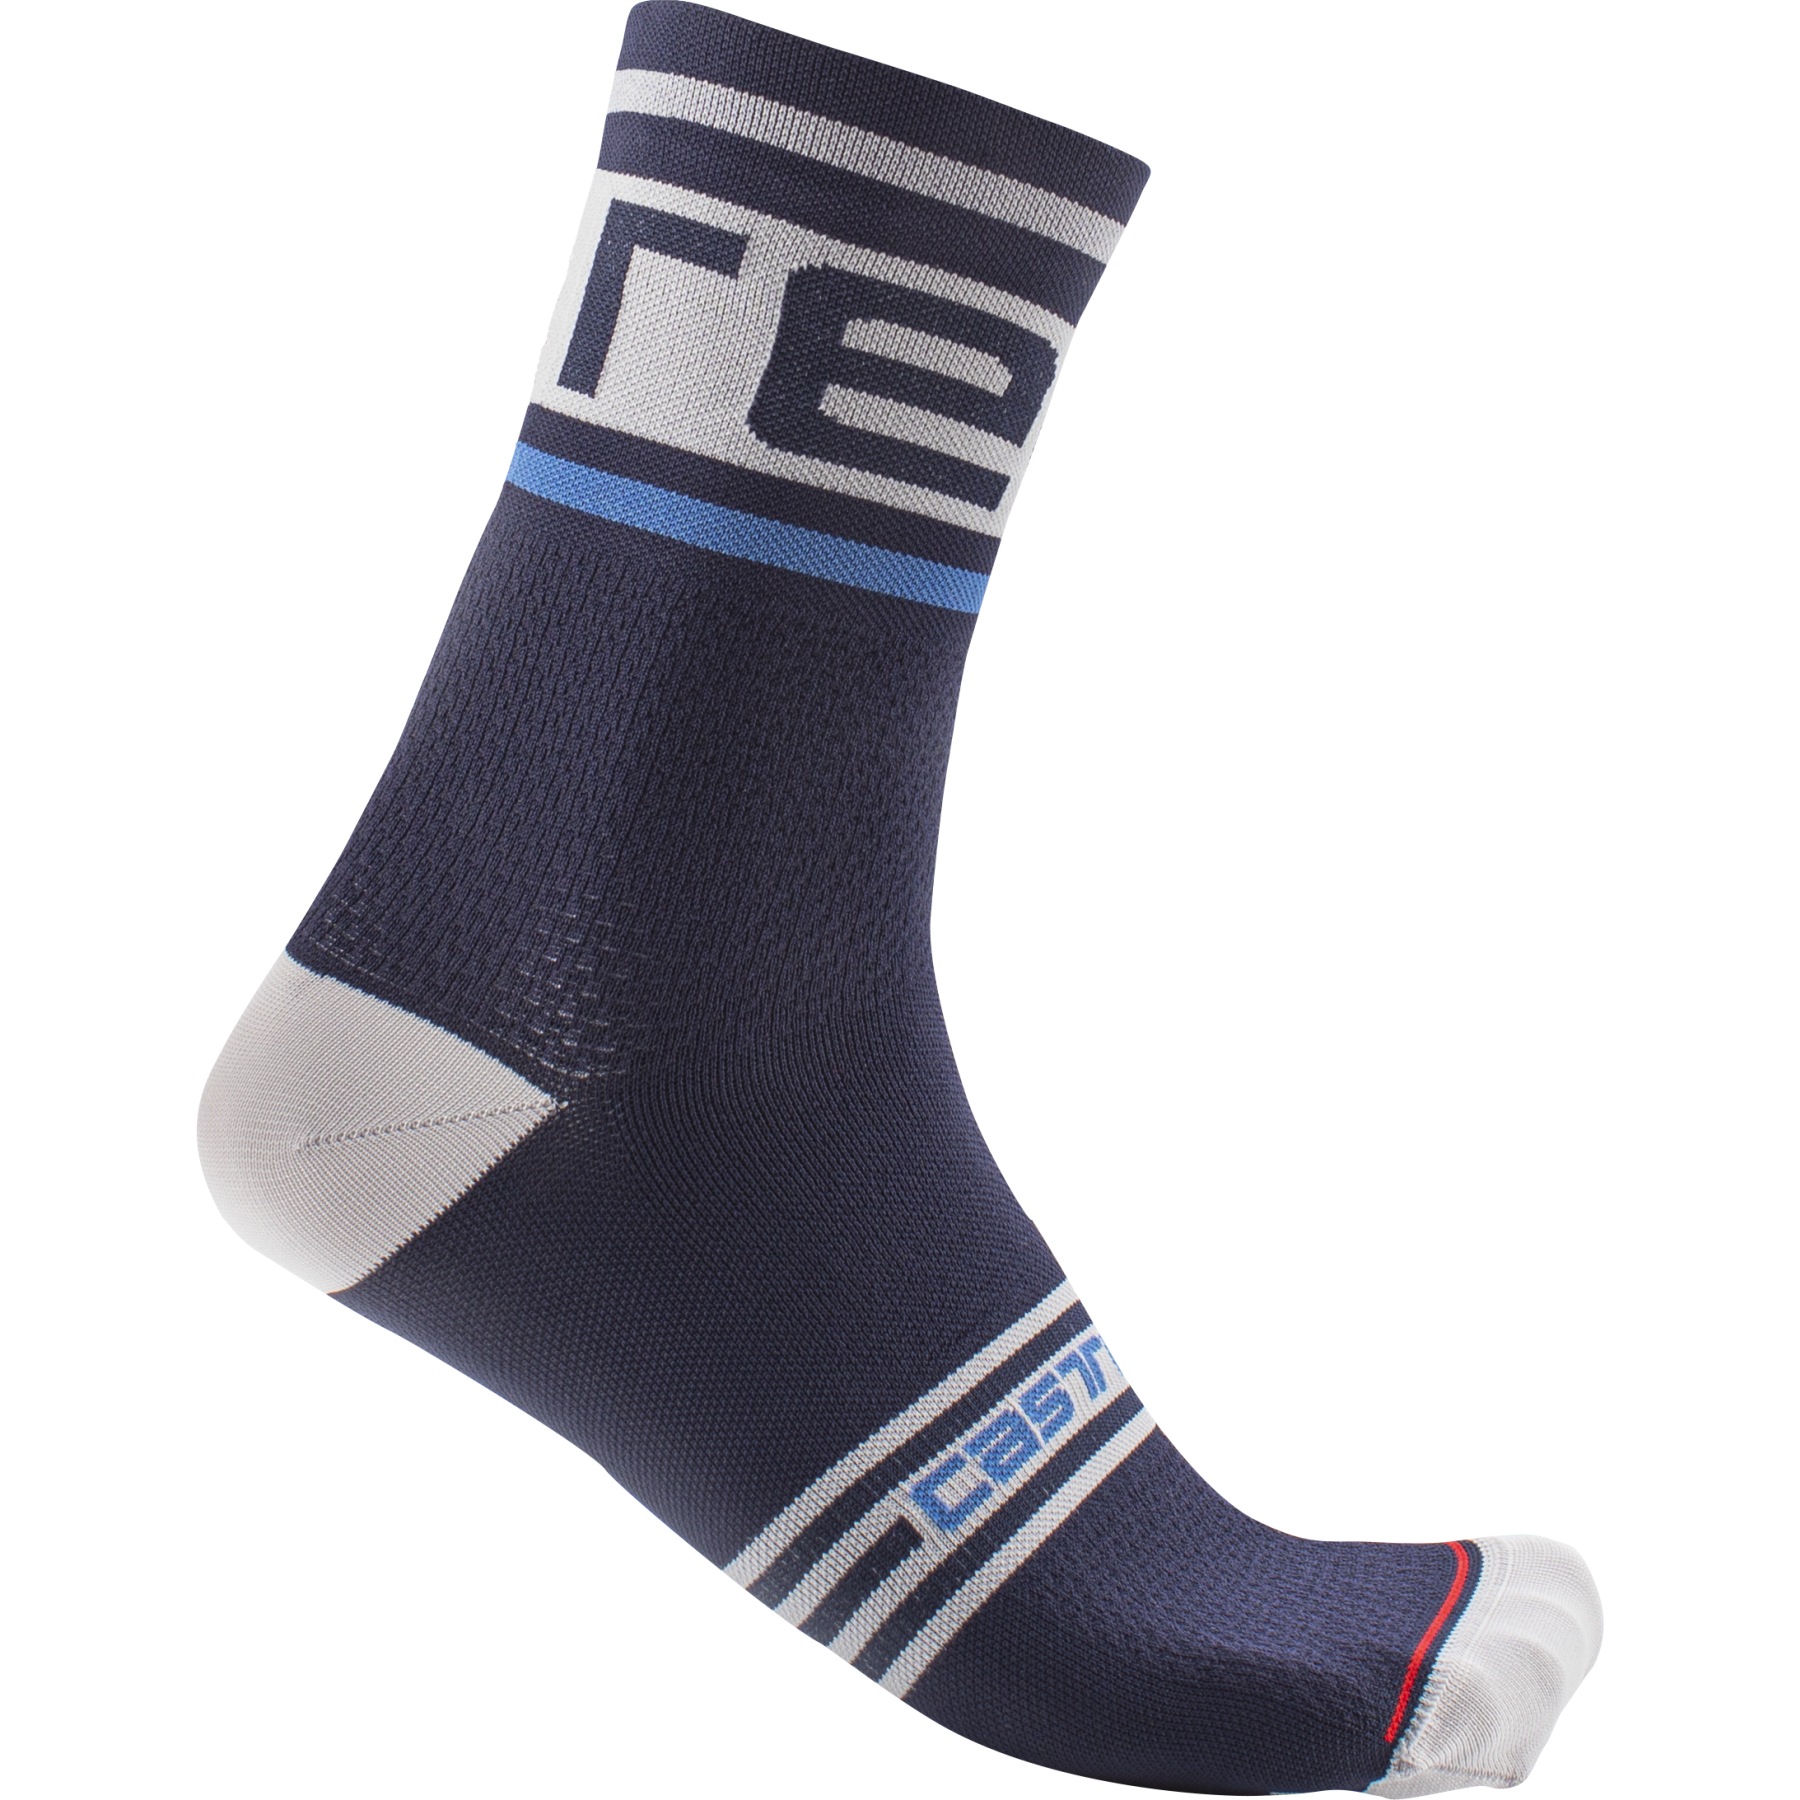 Produktbild von Castelli Prologo 15 Socken - belgian blue 424